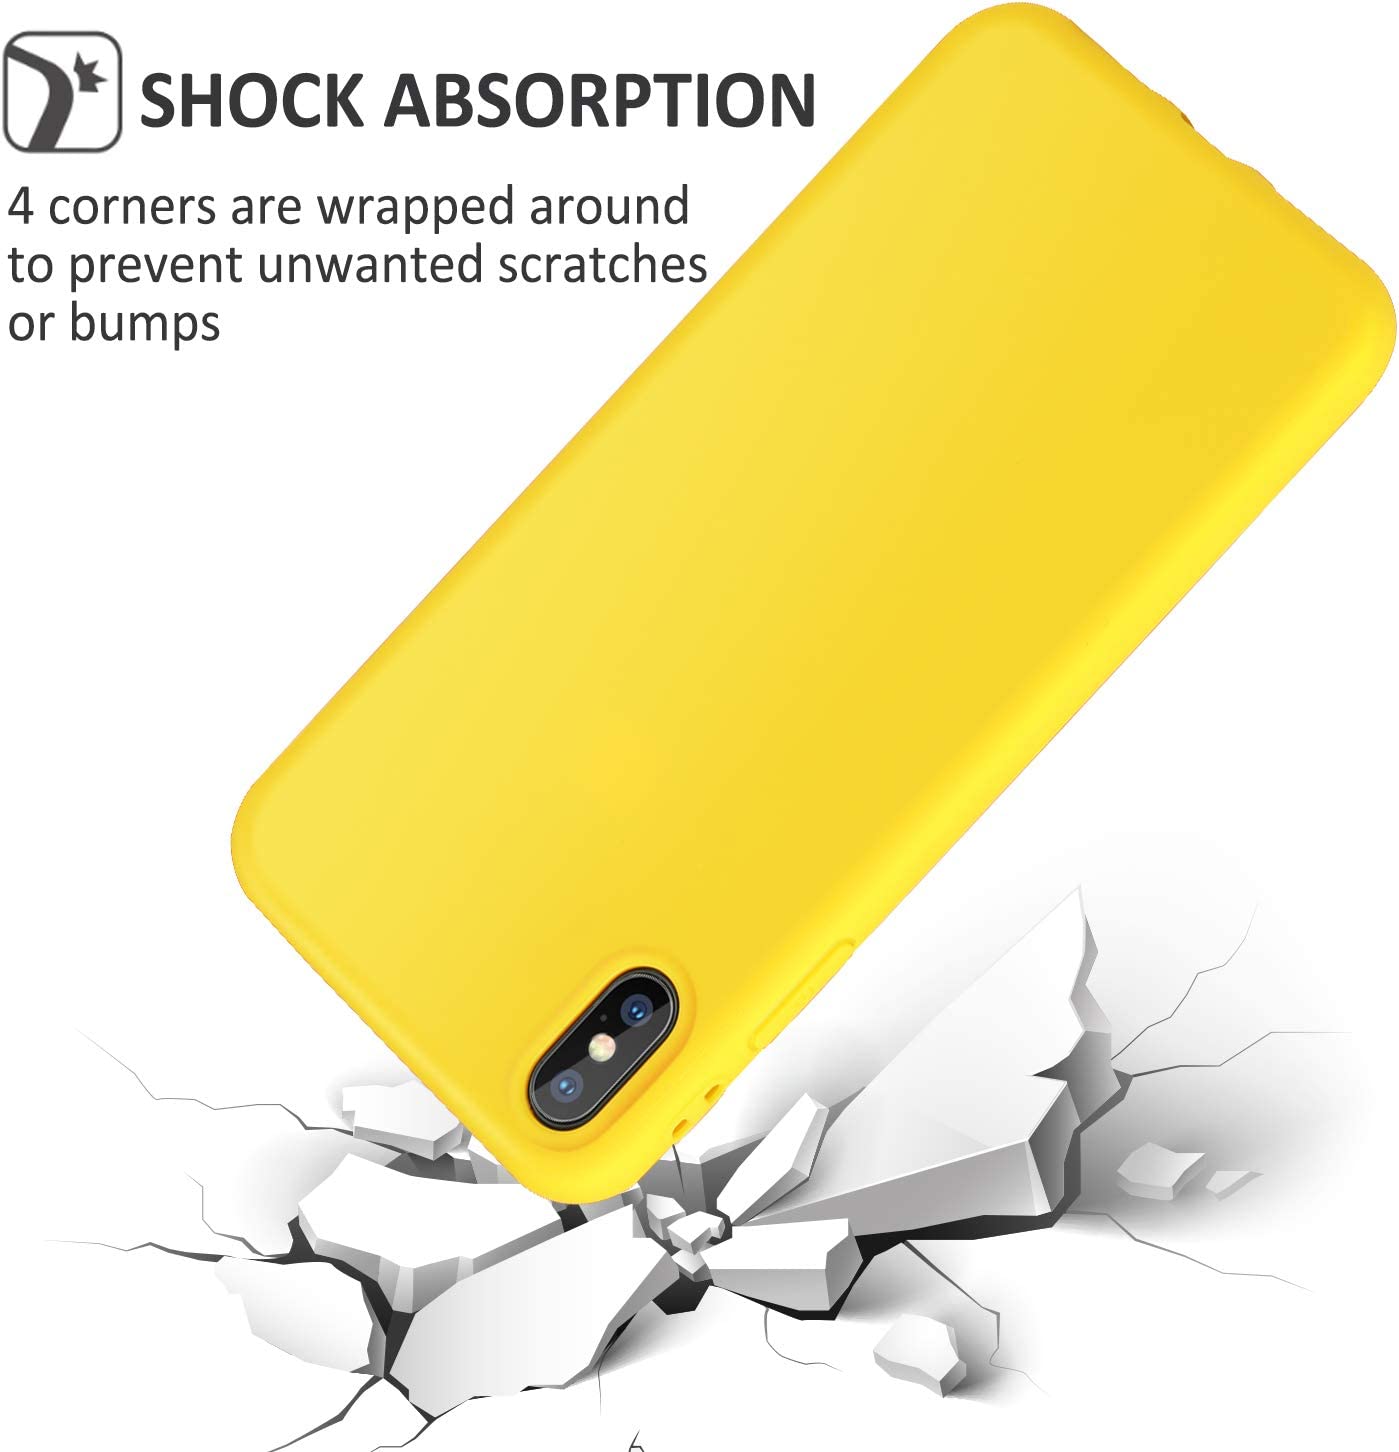 Ốp lưng silicon case chống sốc cho iPhone XS Max chống bám bẩn siêu mỏng mịn hiệu HOTCASE vật liệu cao cấp, dễ lau chùi - hàng nhập khẩu